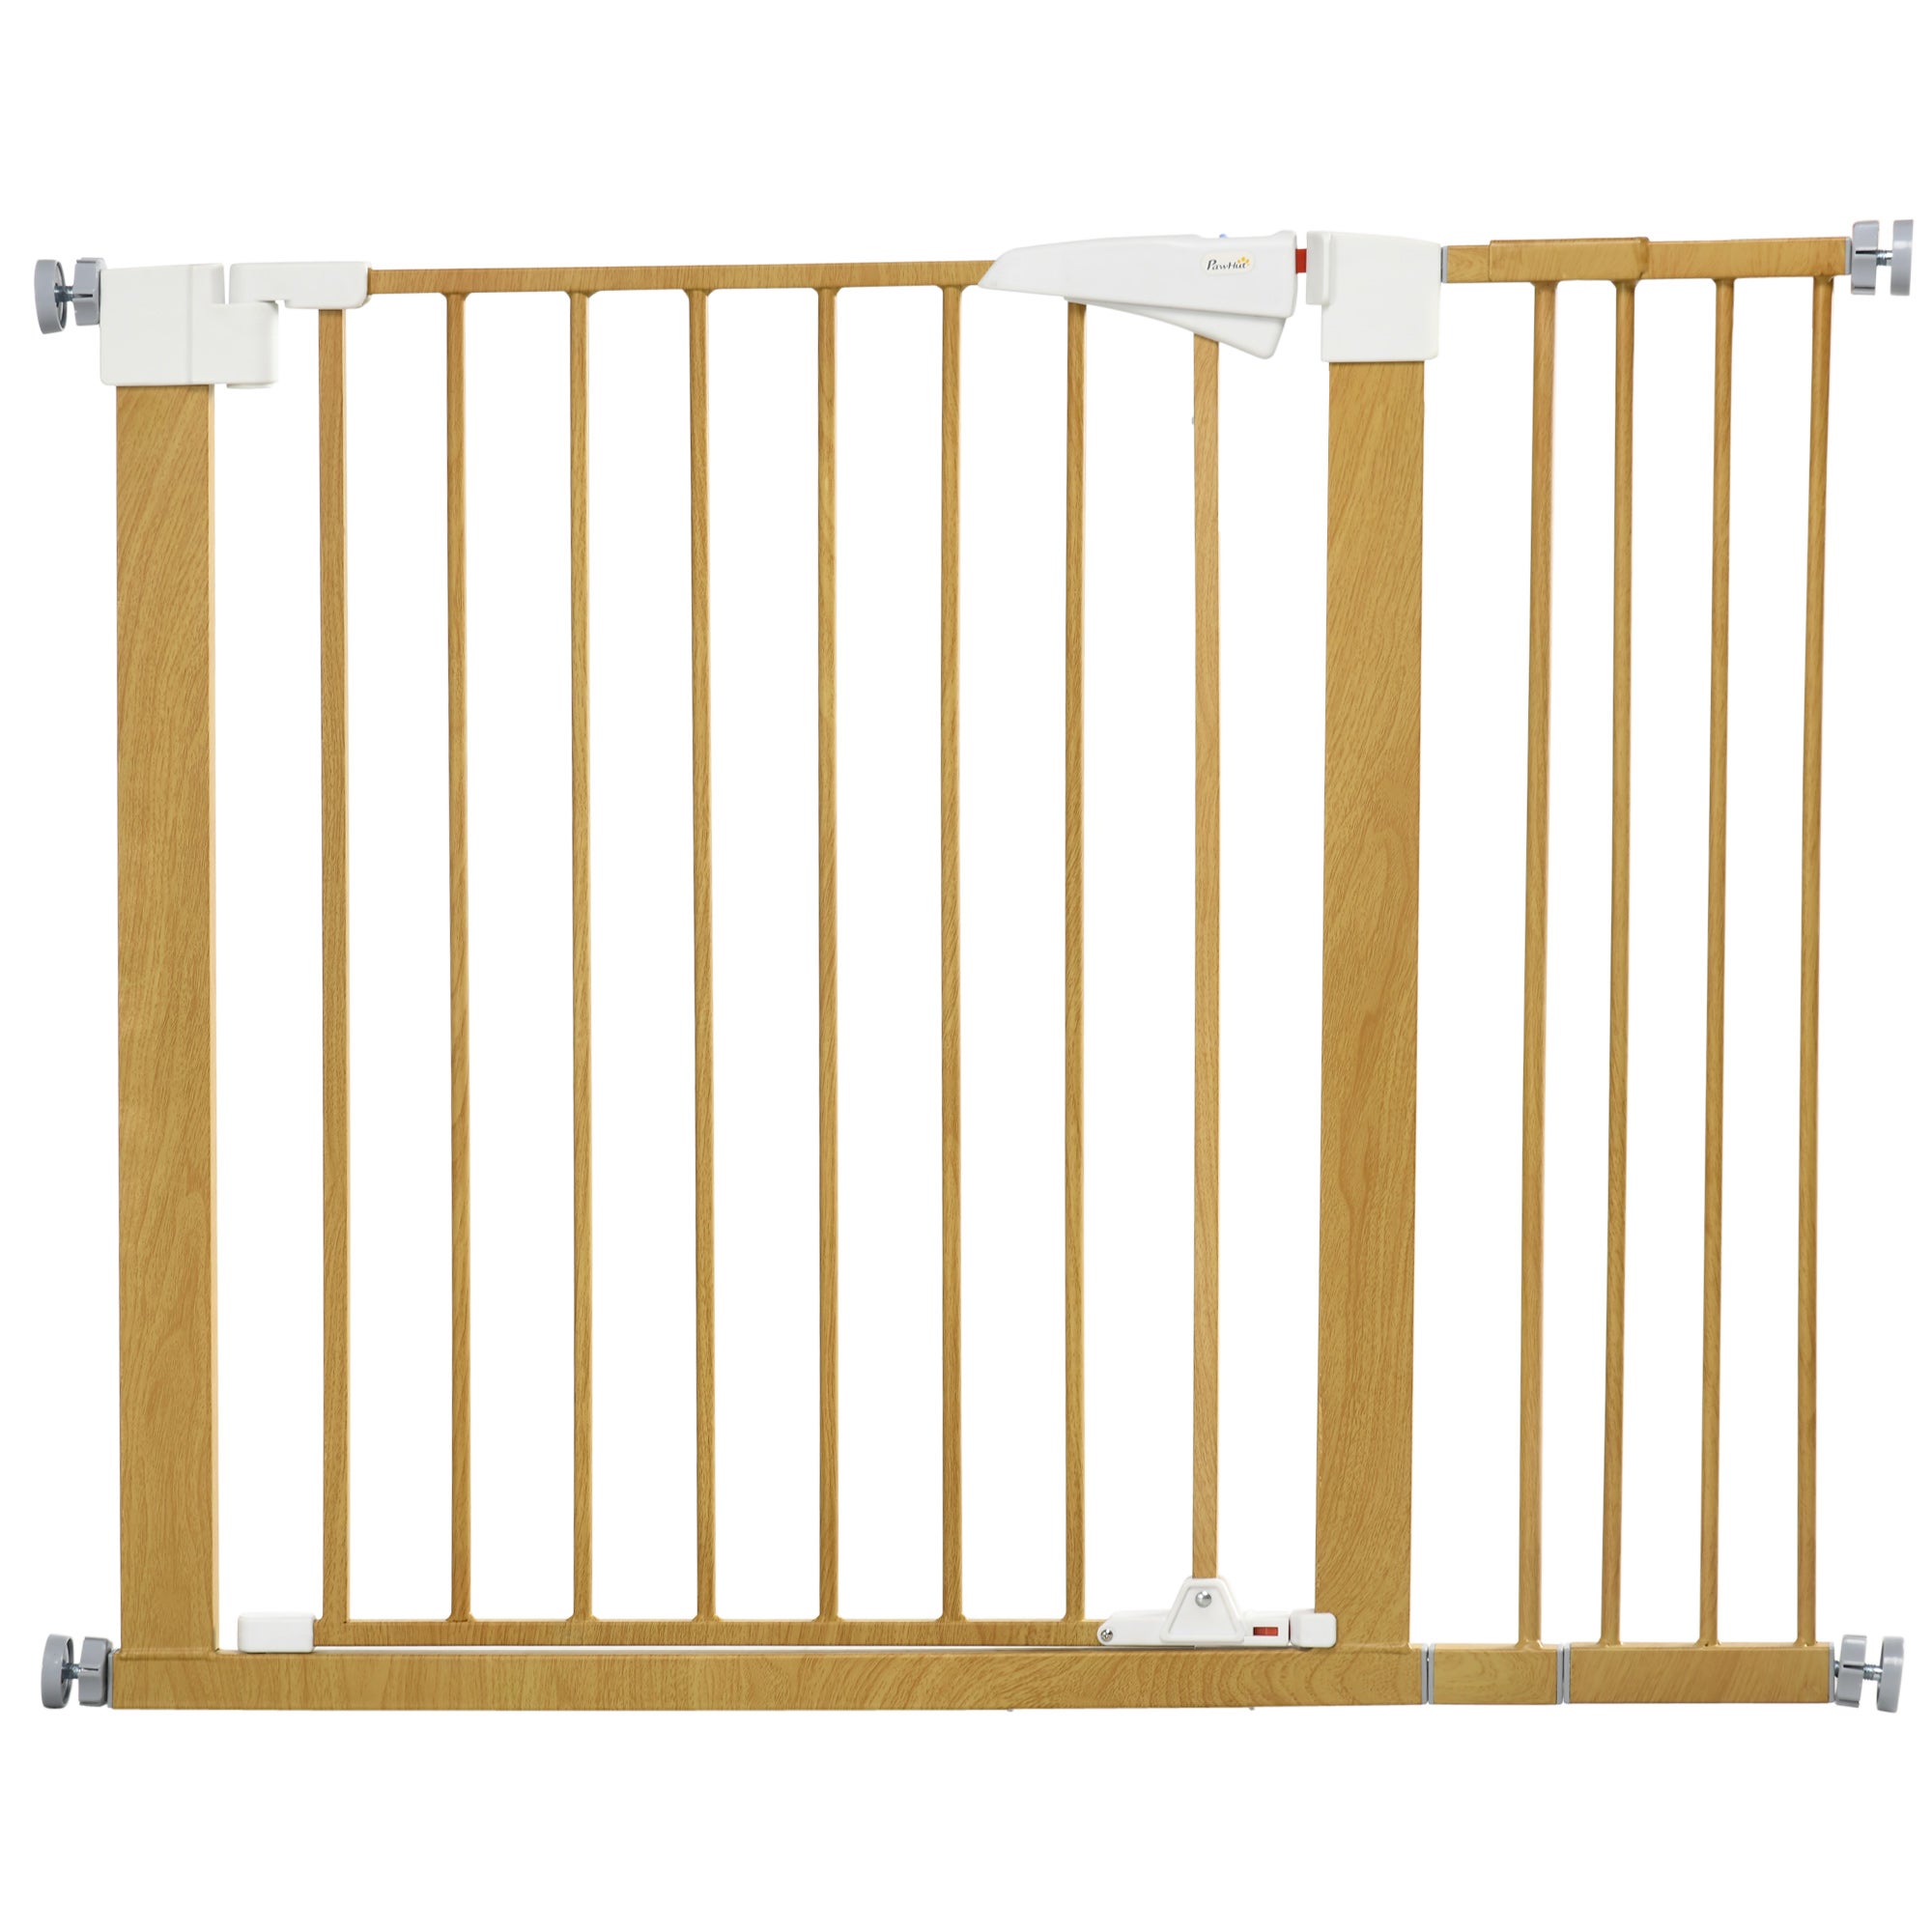 PawHut Barrera de Seguridad Extensible para Perros Valla Protección para  Escaleras y Puertas 113-166x36x71 cm Blanco